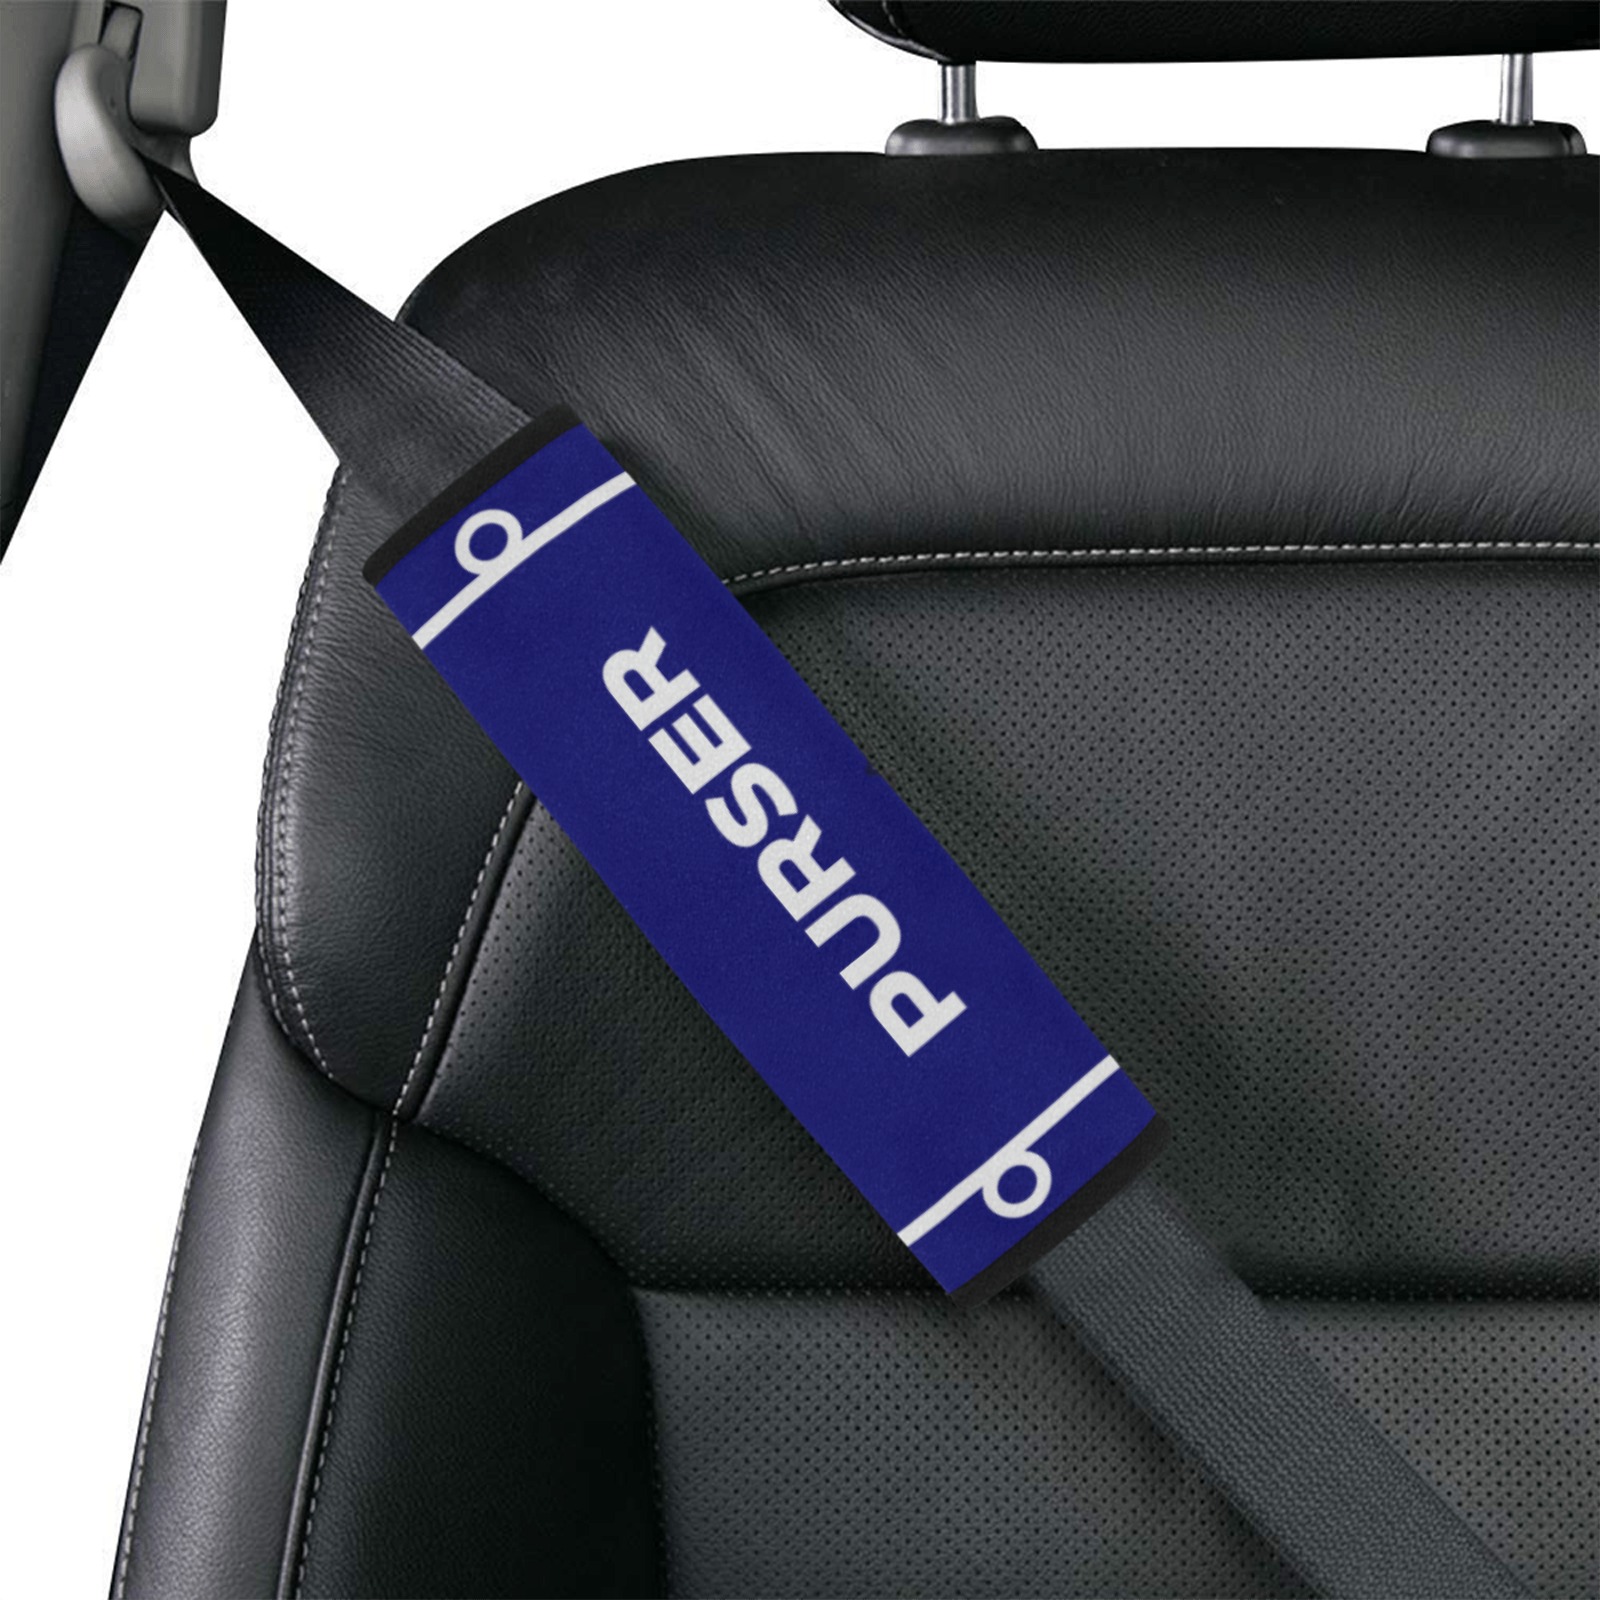 purser car seatbelt cover Car Seat Belt Cover 7''x8.5''